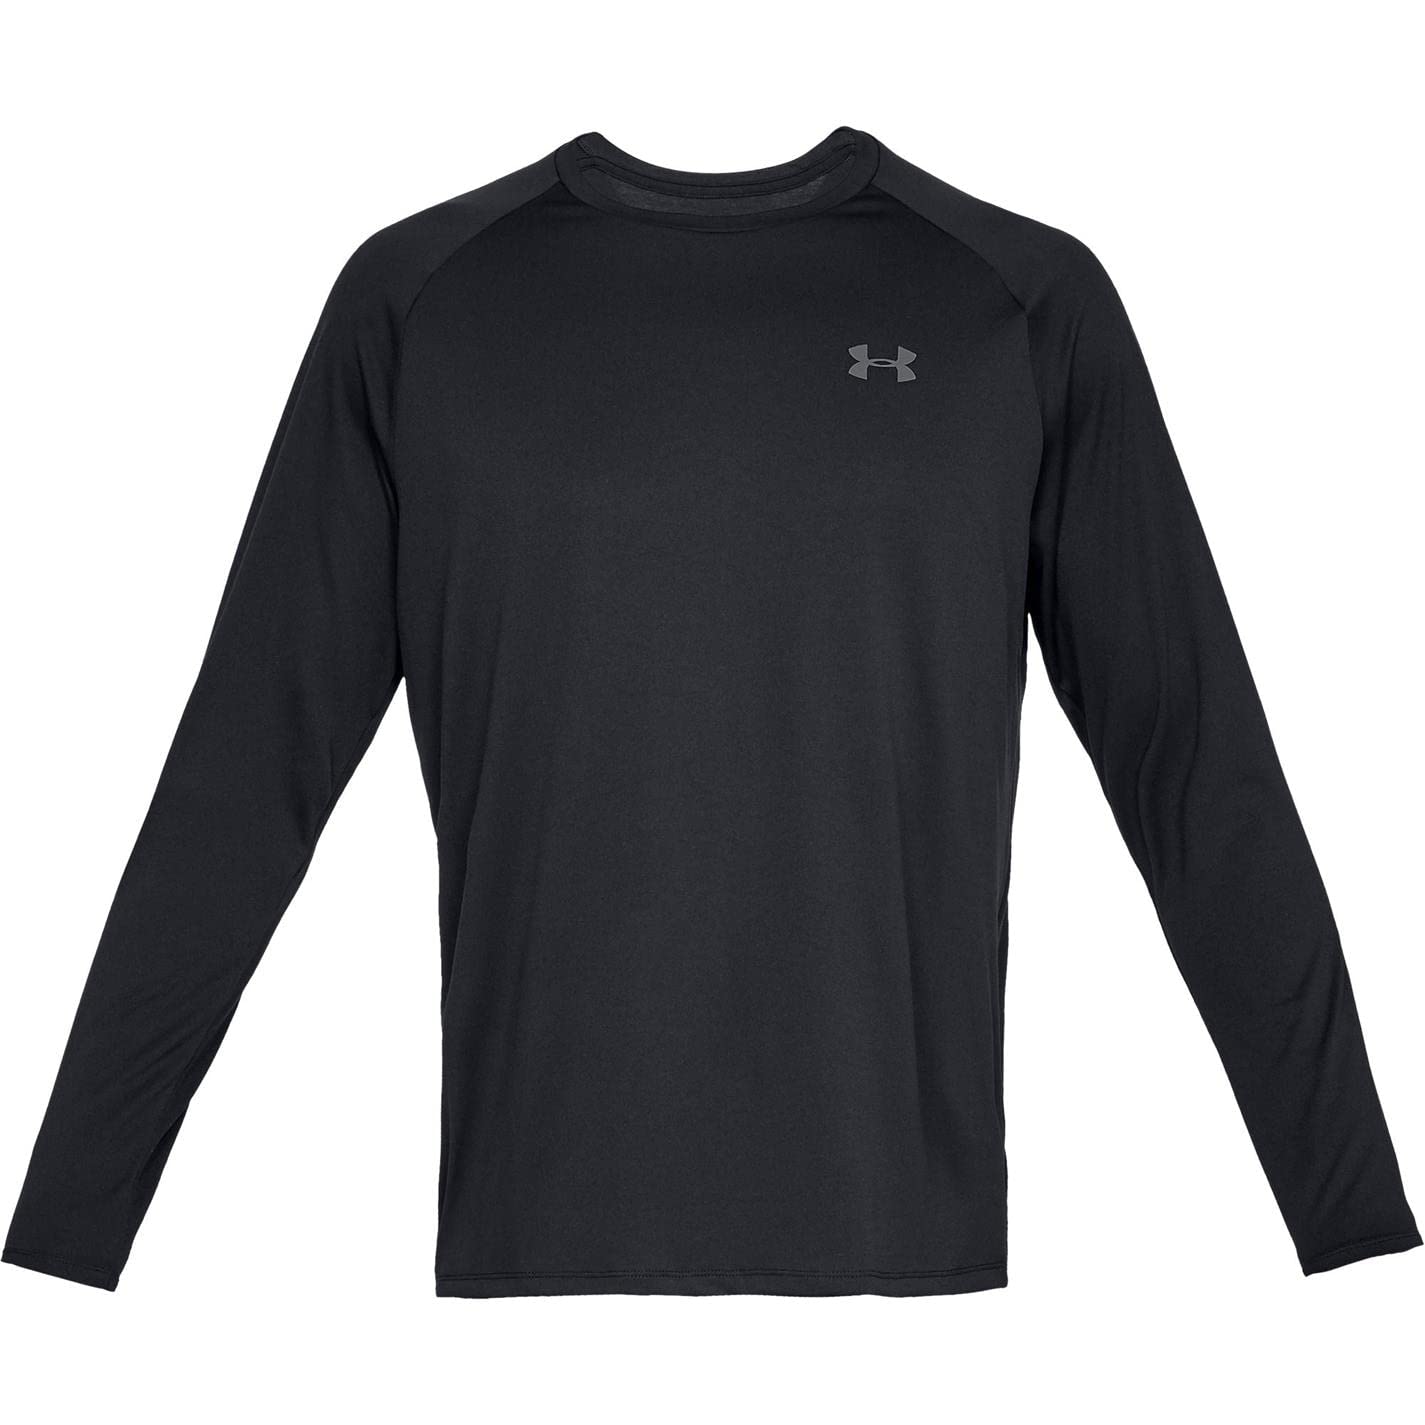 $11.02: Under Armour Men's Tech 2.0 Long Sleeve T-Shirt